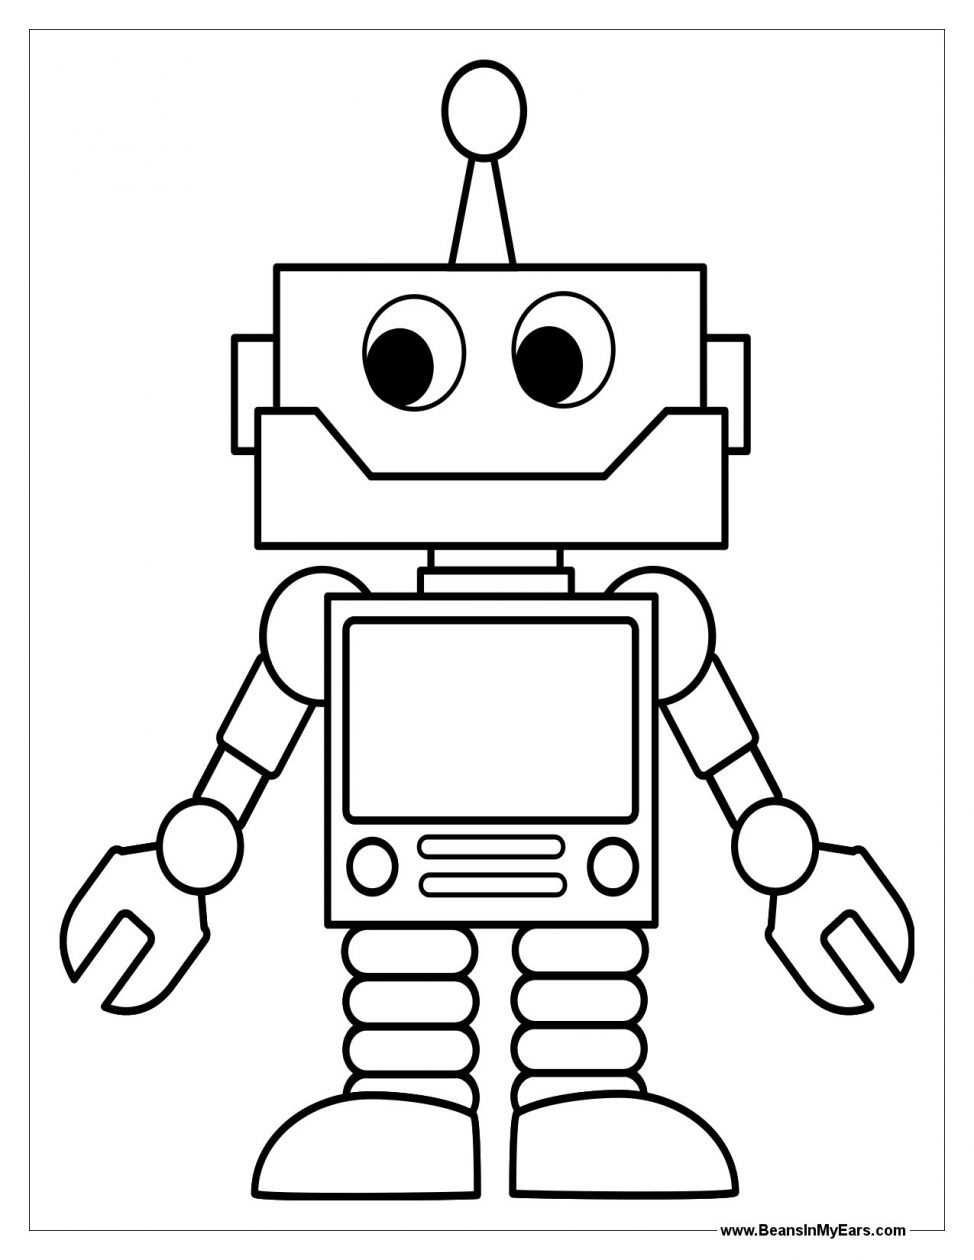 Скачать бесплатные раскраски для детей. Раскраски детские онлайн бесплатно. Раскраски для мальчиков с роботами. Раскраски для детей. Бесплатные детские раскраски.